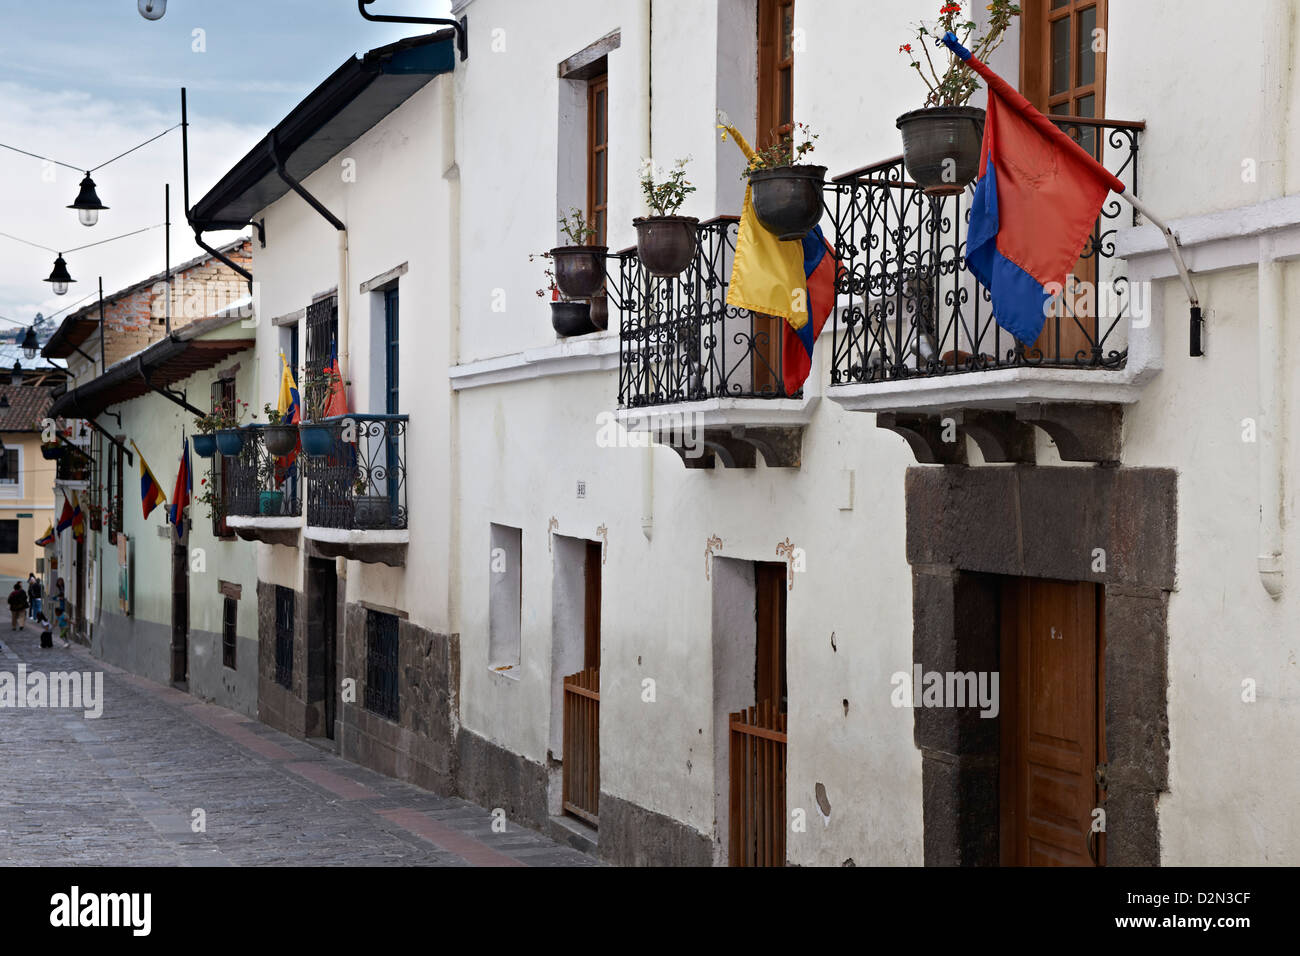 Calle de la Ronda, historical center of Quito, Ecuador Stock Photo